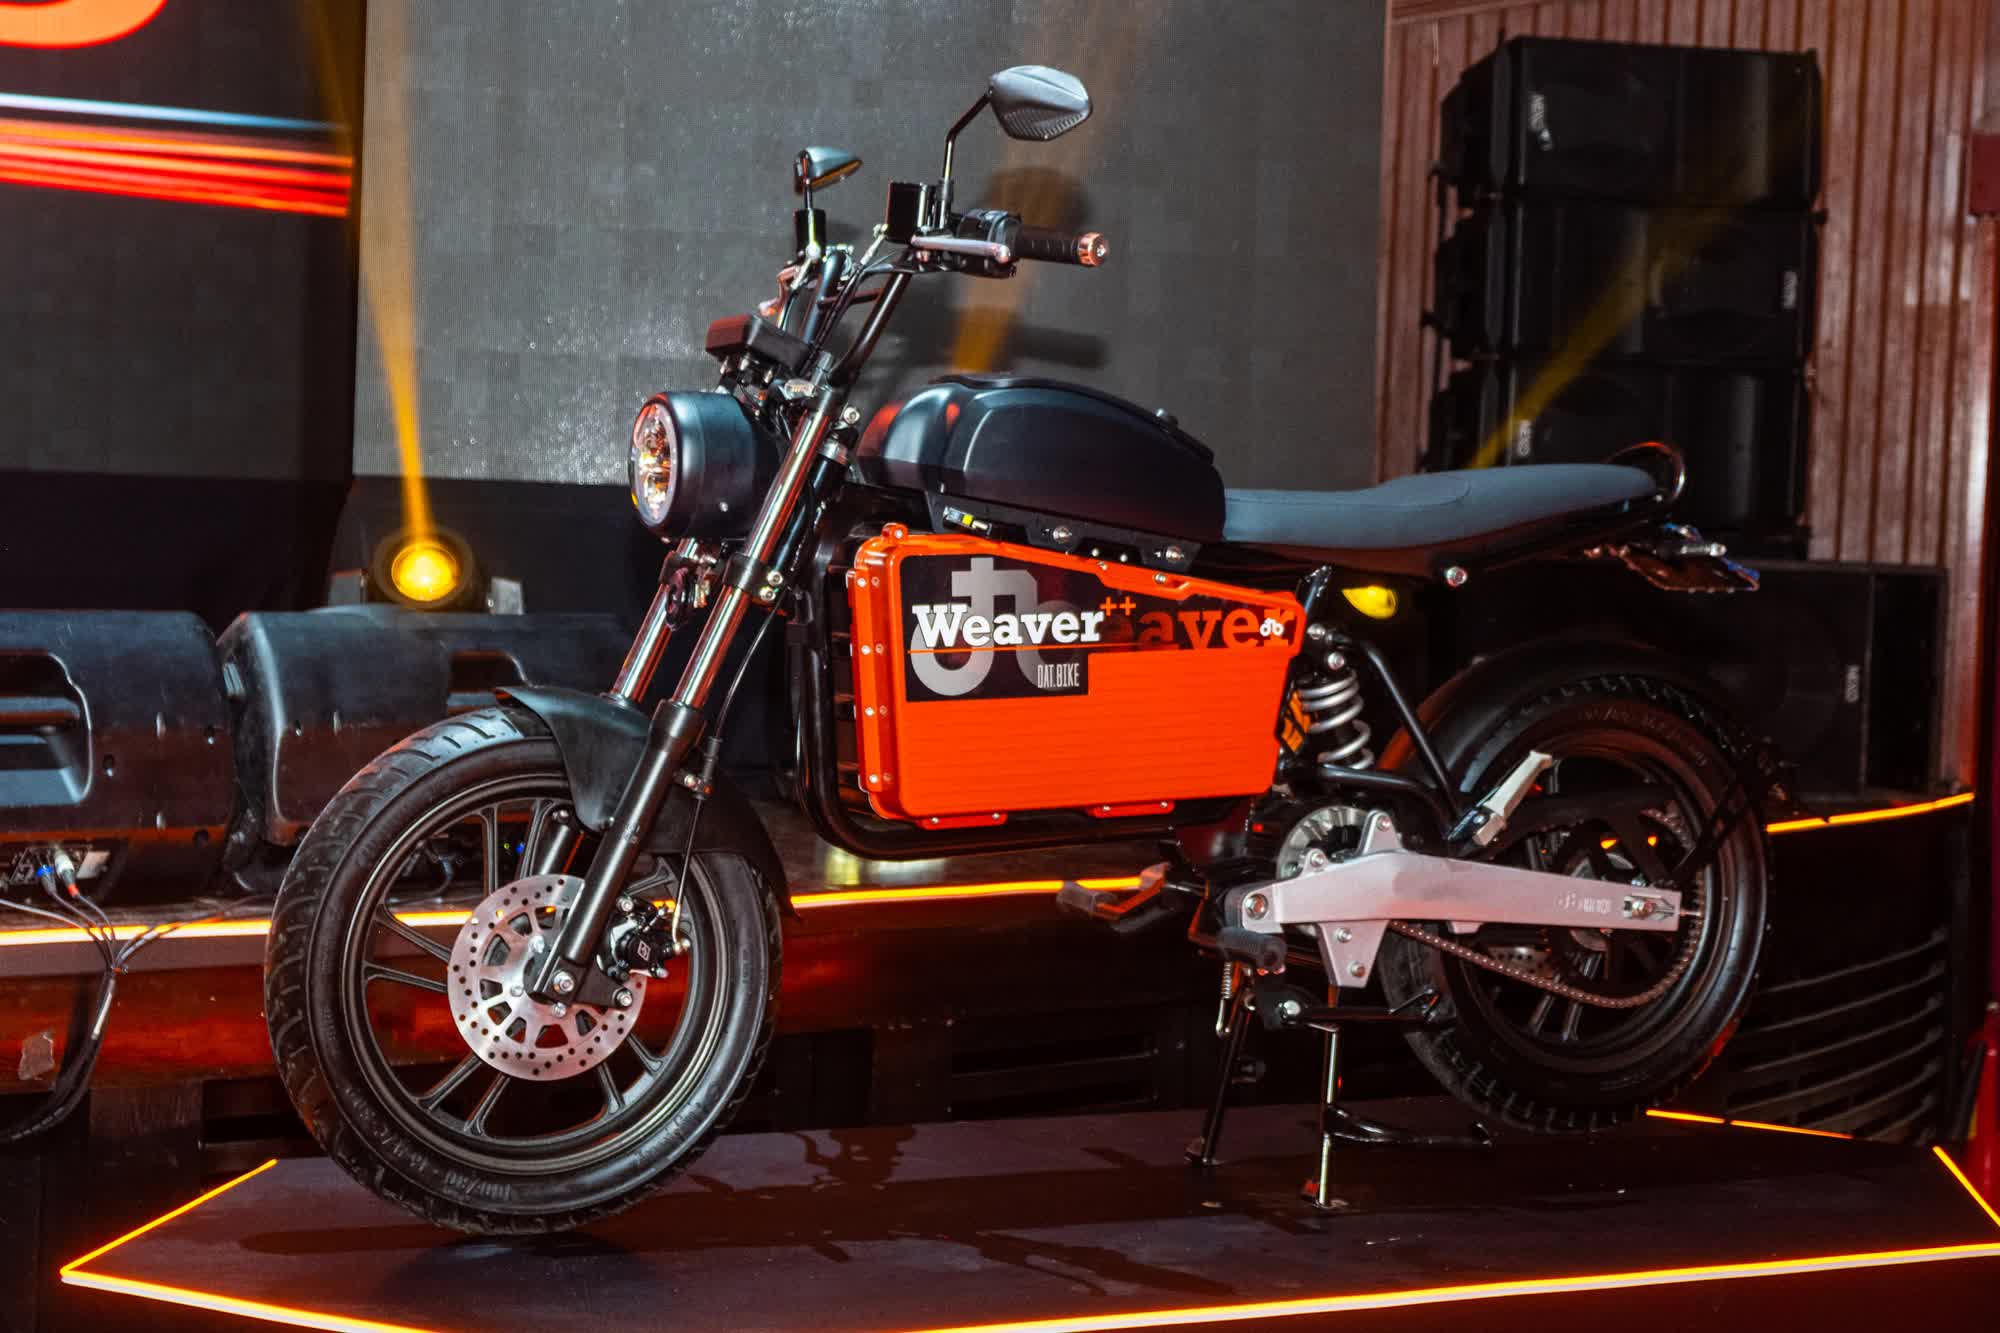 Ra mắt Dat Bike Weaver++: Giá 65,9 triệu đồng, dáng cổ điển, sạc nhanh chưa từng có tại Việt Nam - ảnh 2